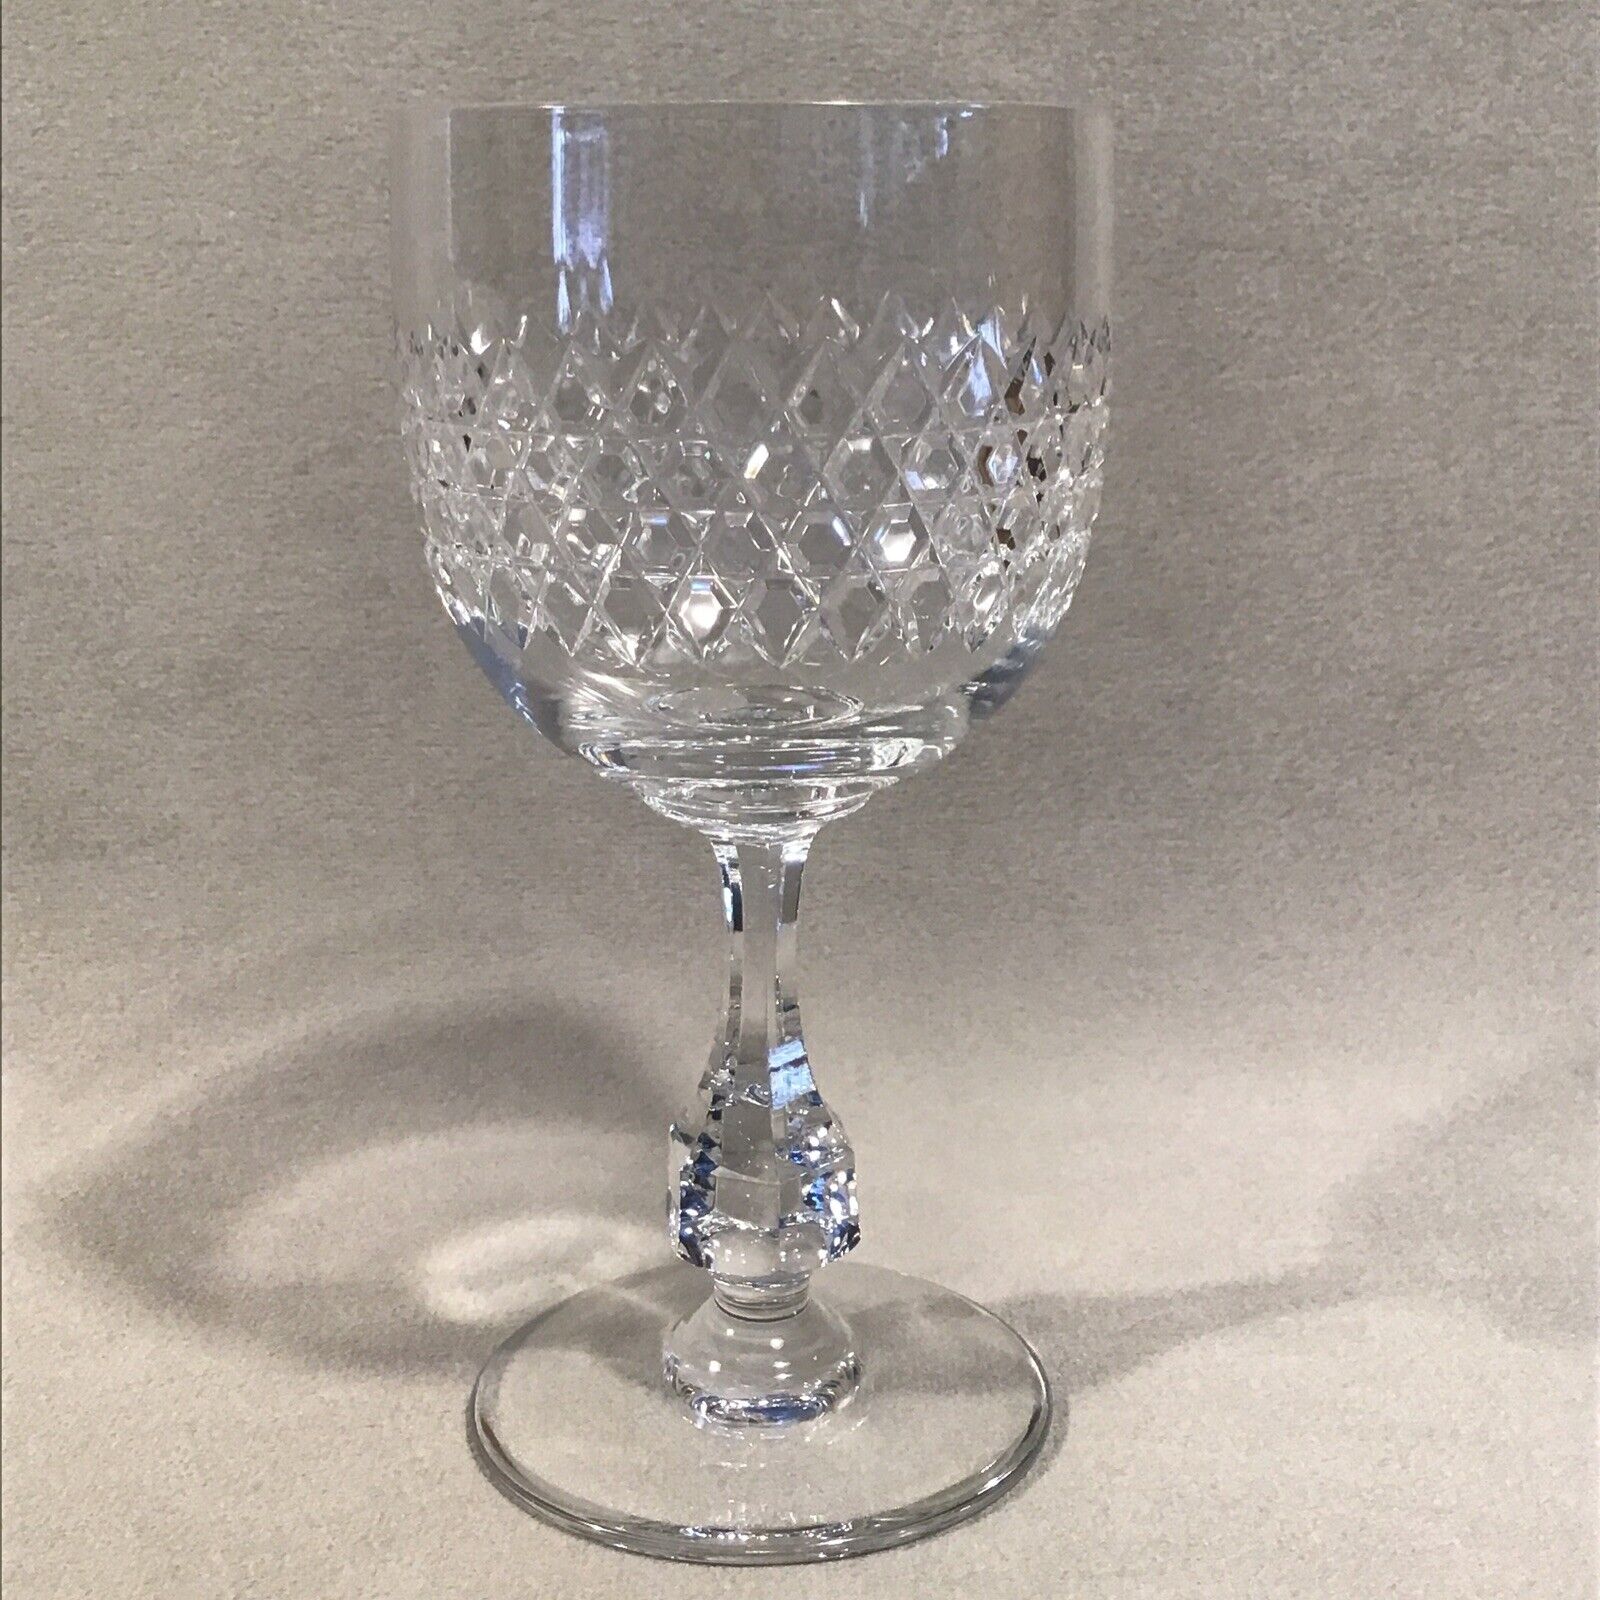 PV07790 Vintage Baccarat Crystal LUCULLUS Claret / Red Wine Goblet